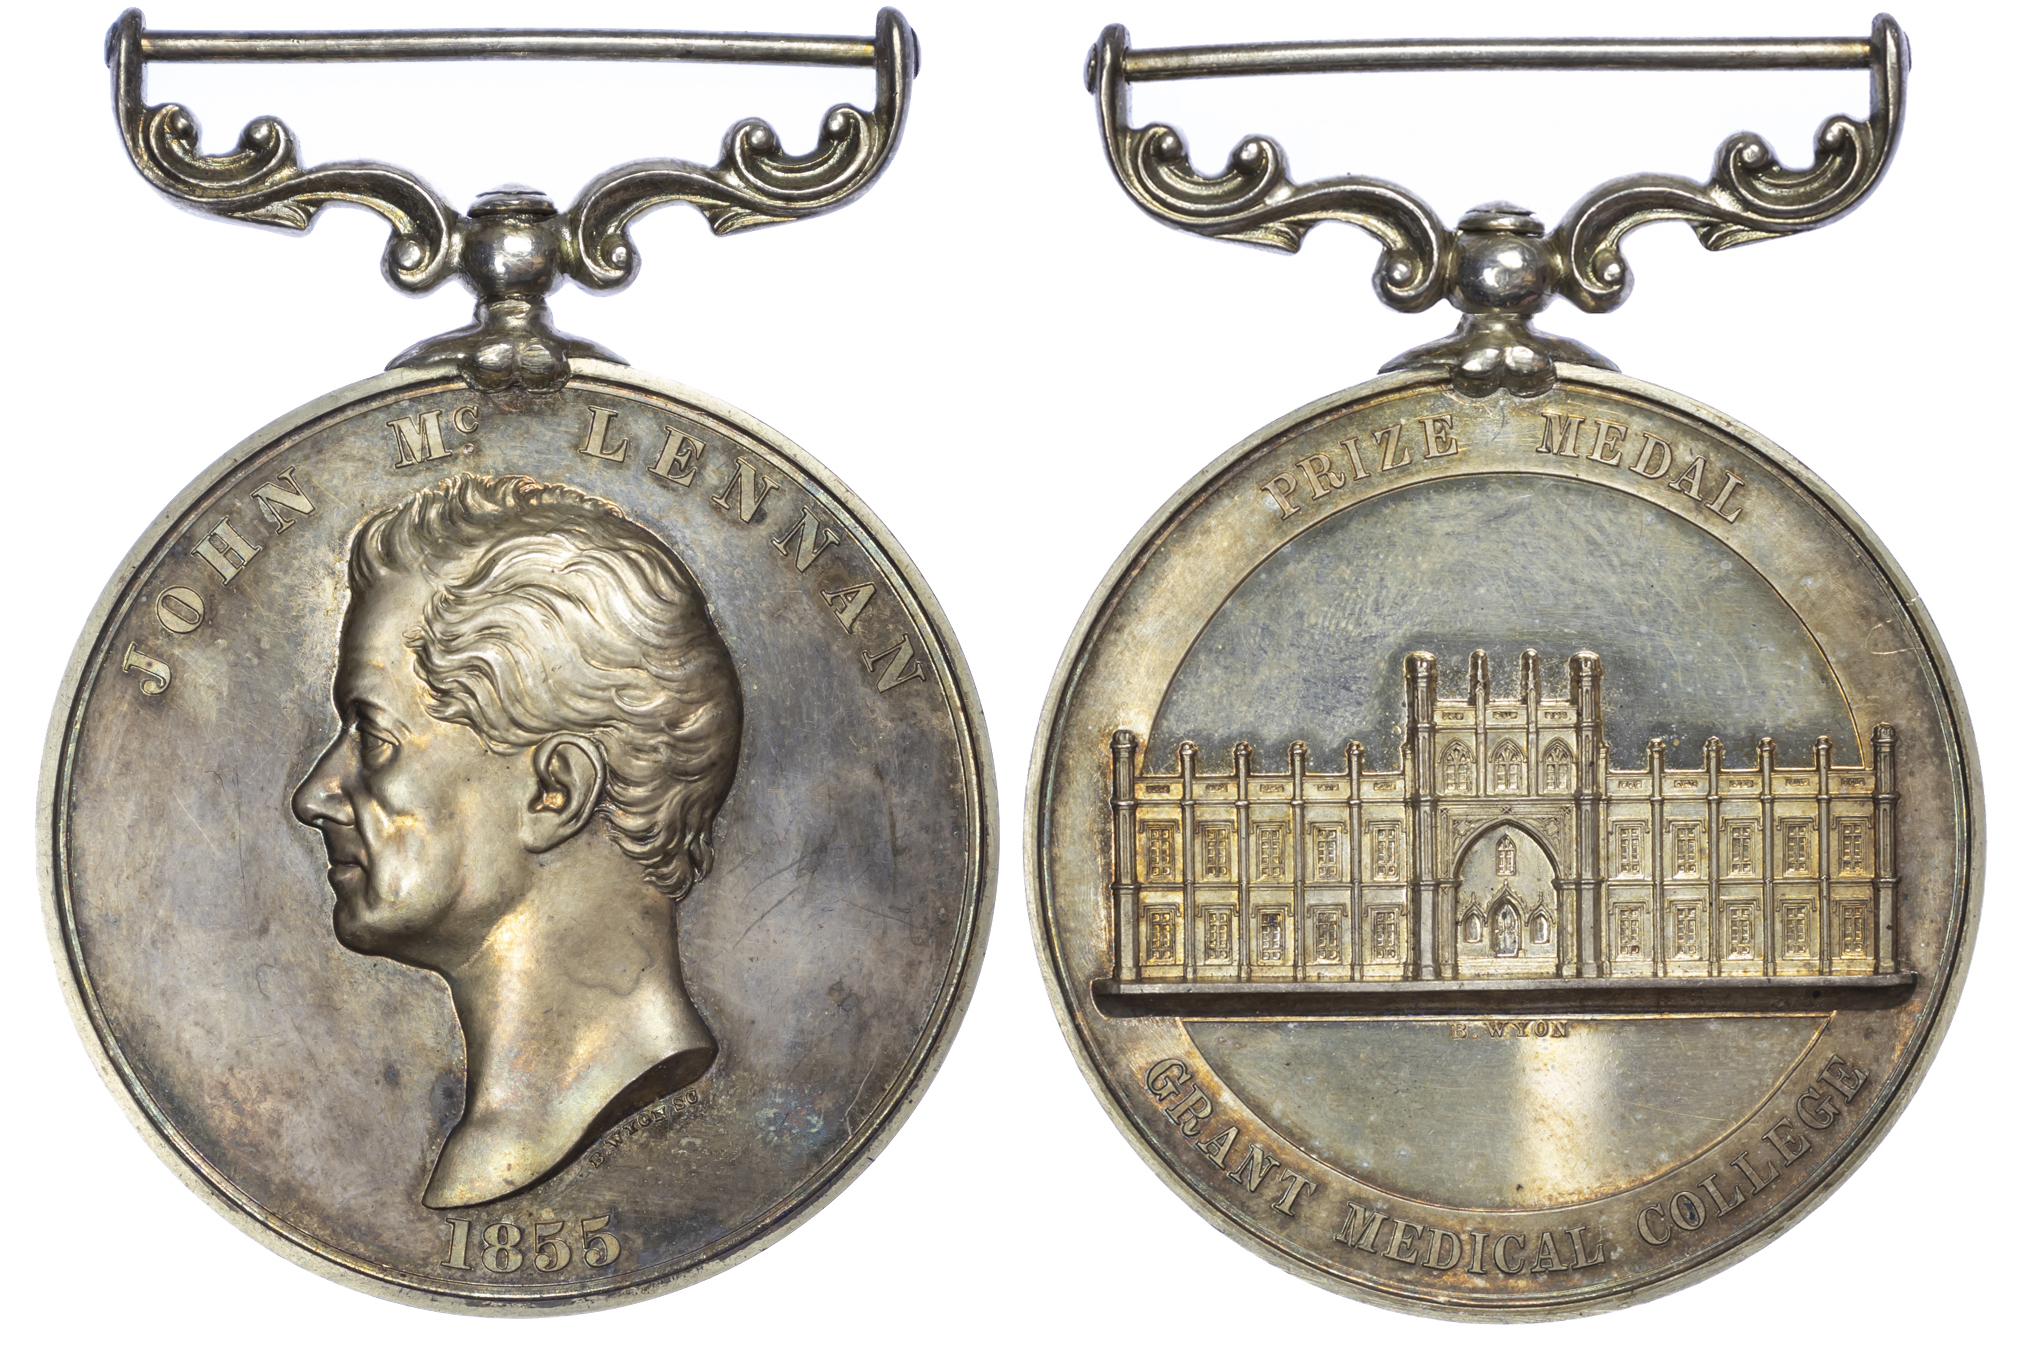 Edward VII, Grant Medical College (Bombay) Medal, 1907